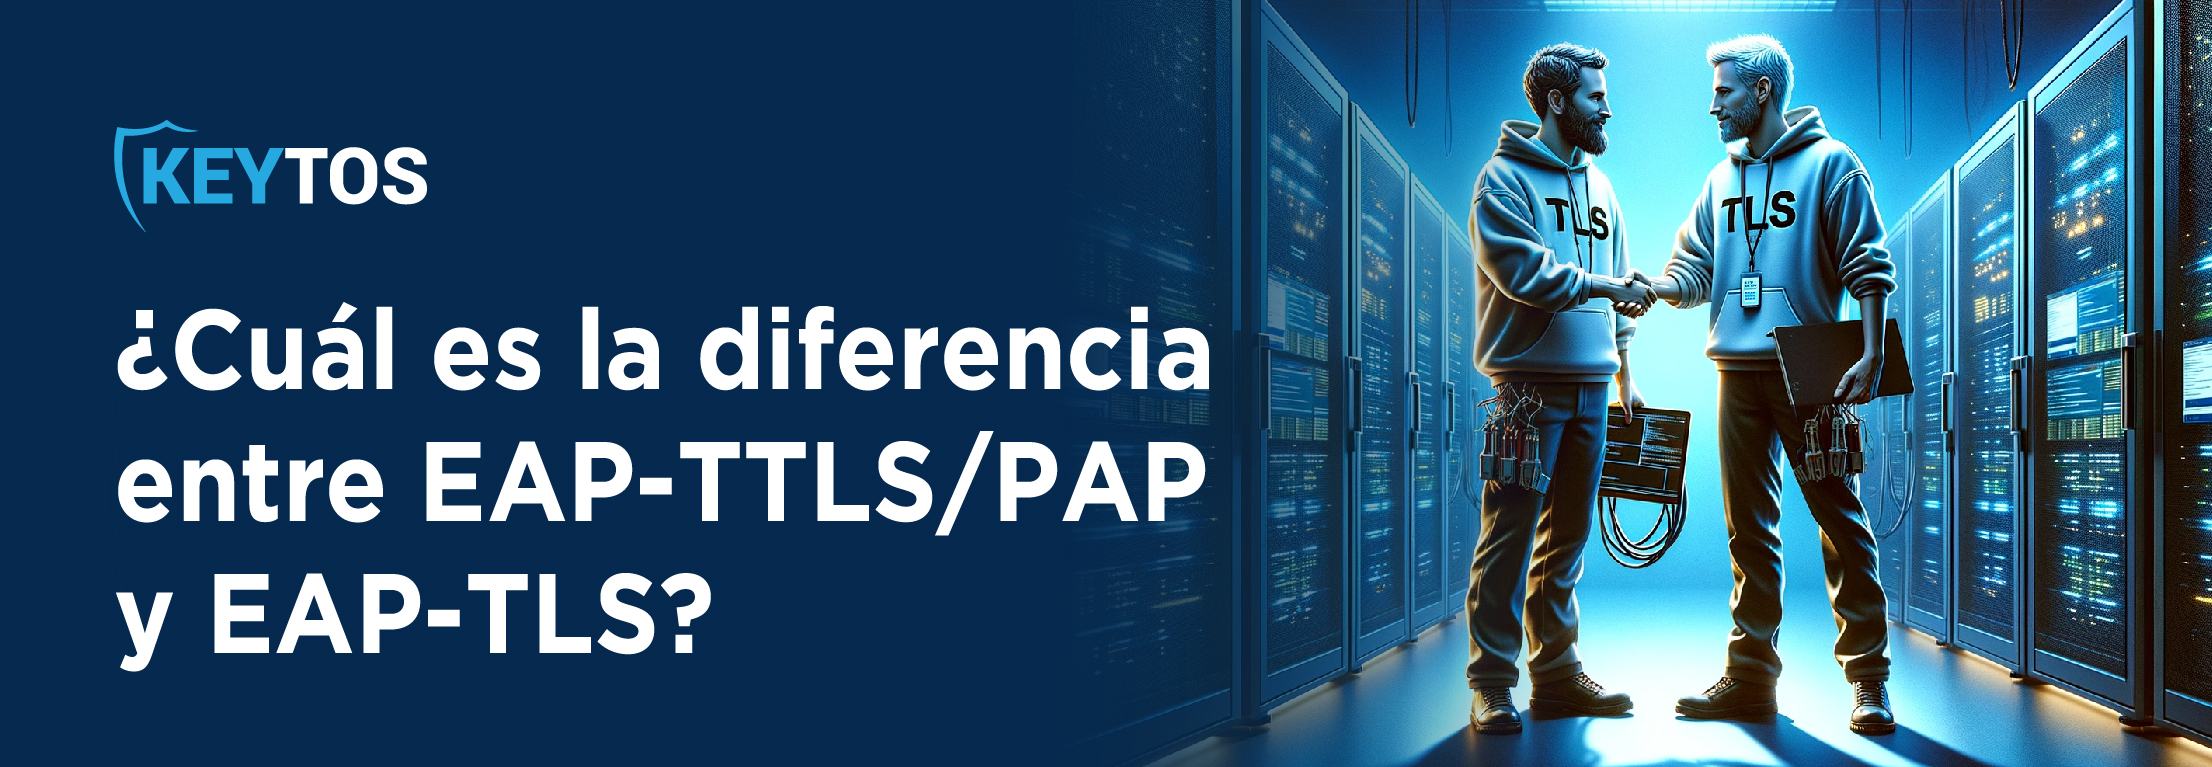 Cual es la diferencia entre EAP-TTLS y EAP-TLS? EAP-TLS vs. EAP-TTLS/PAP Son lo mismo?